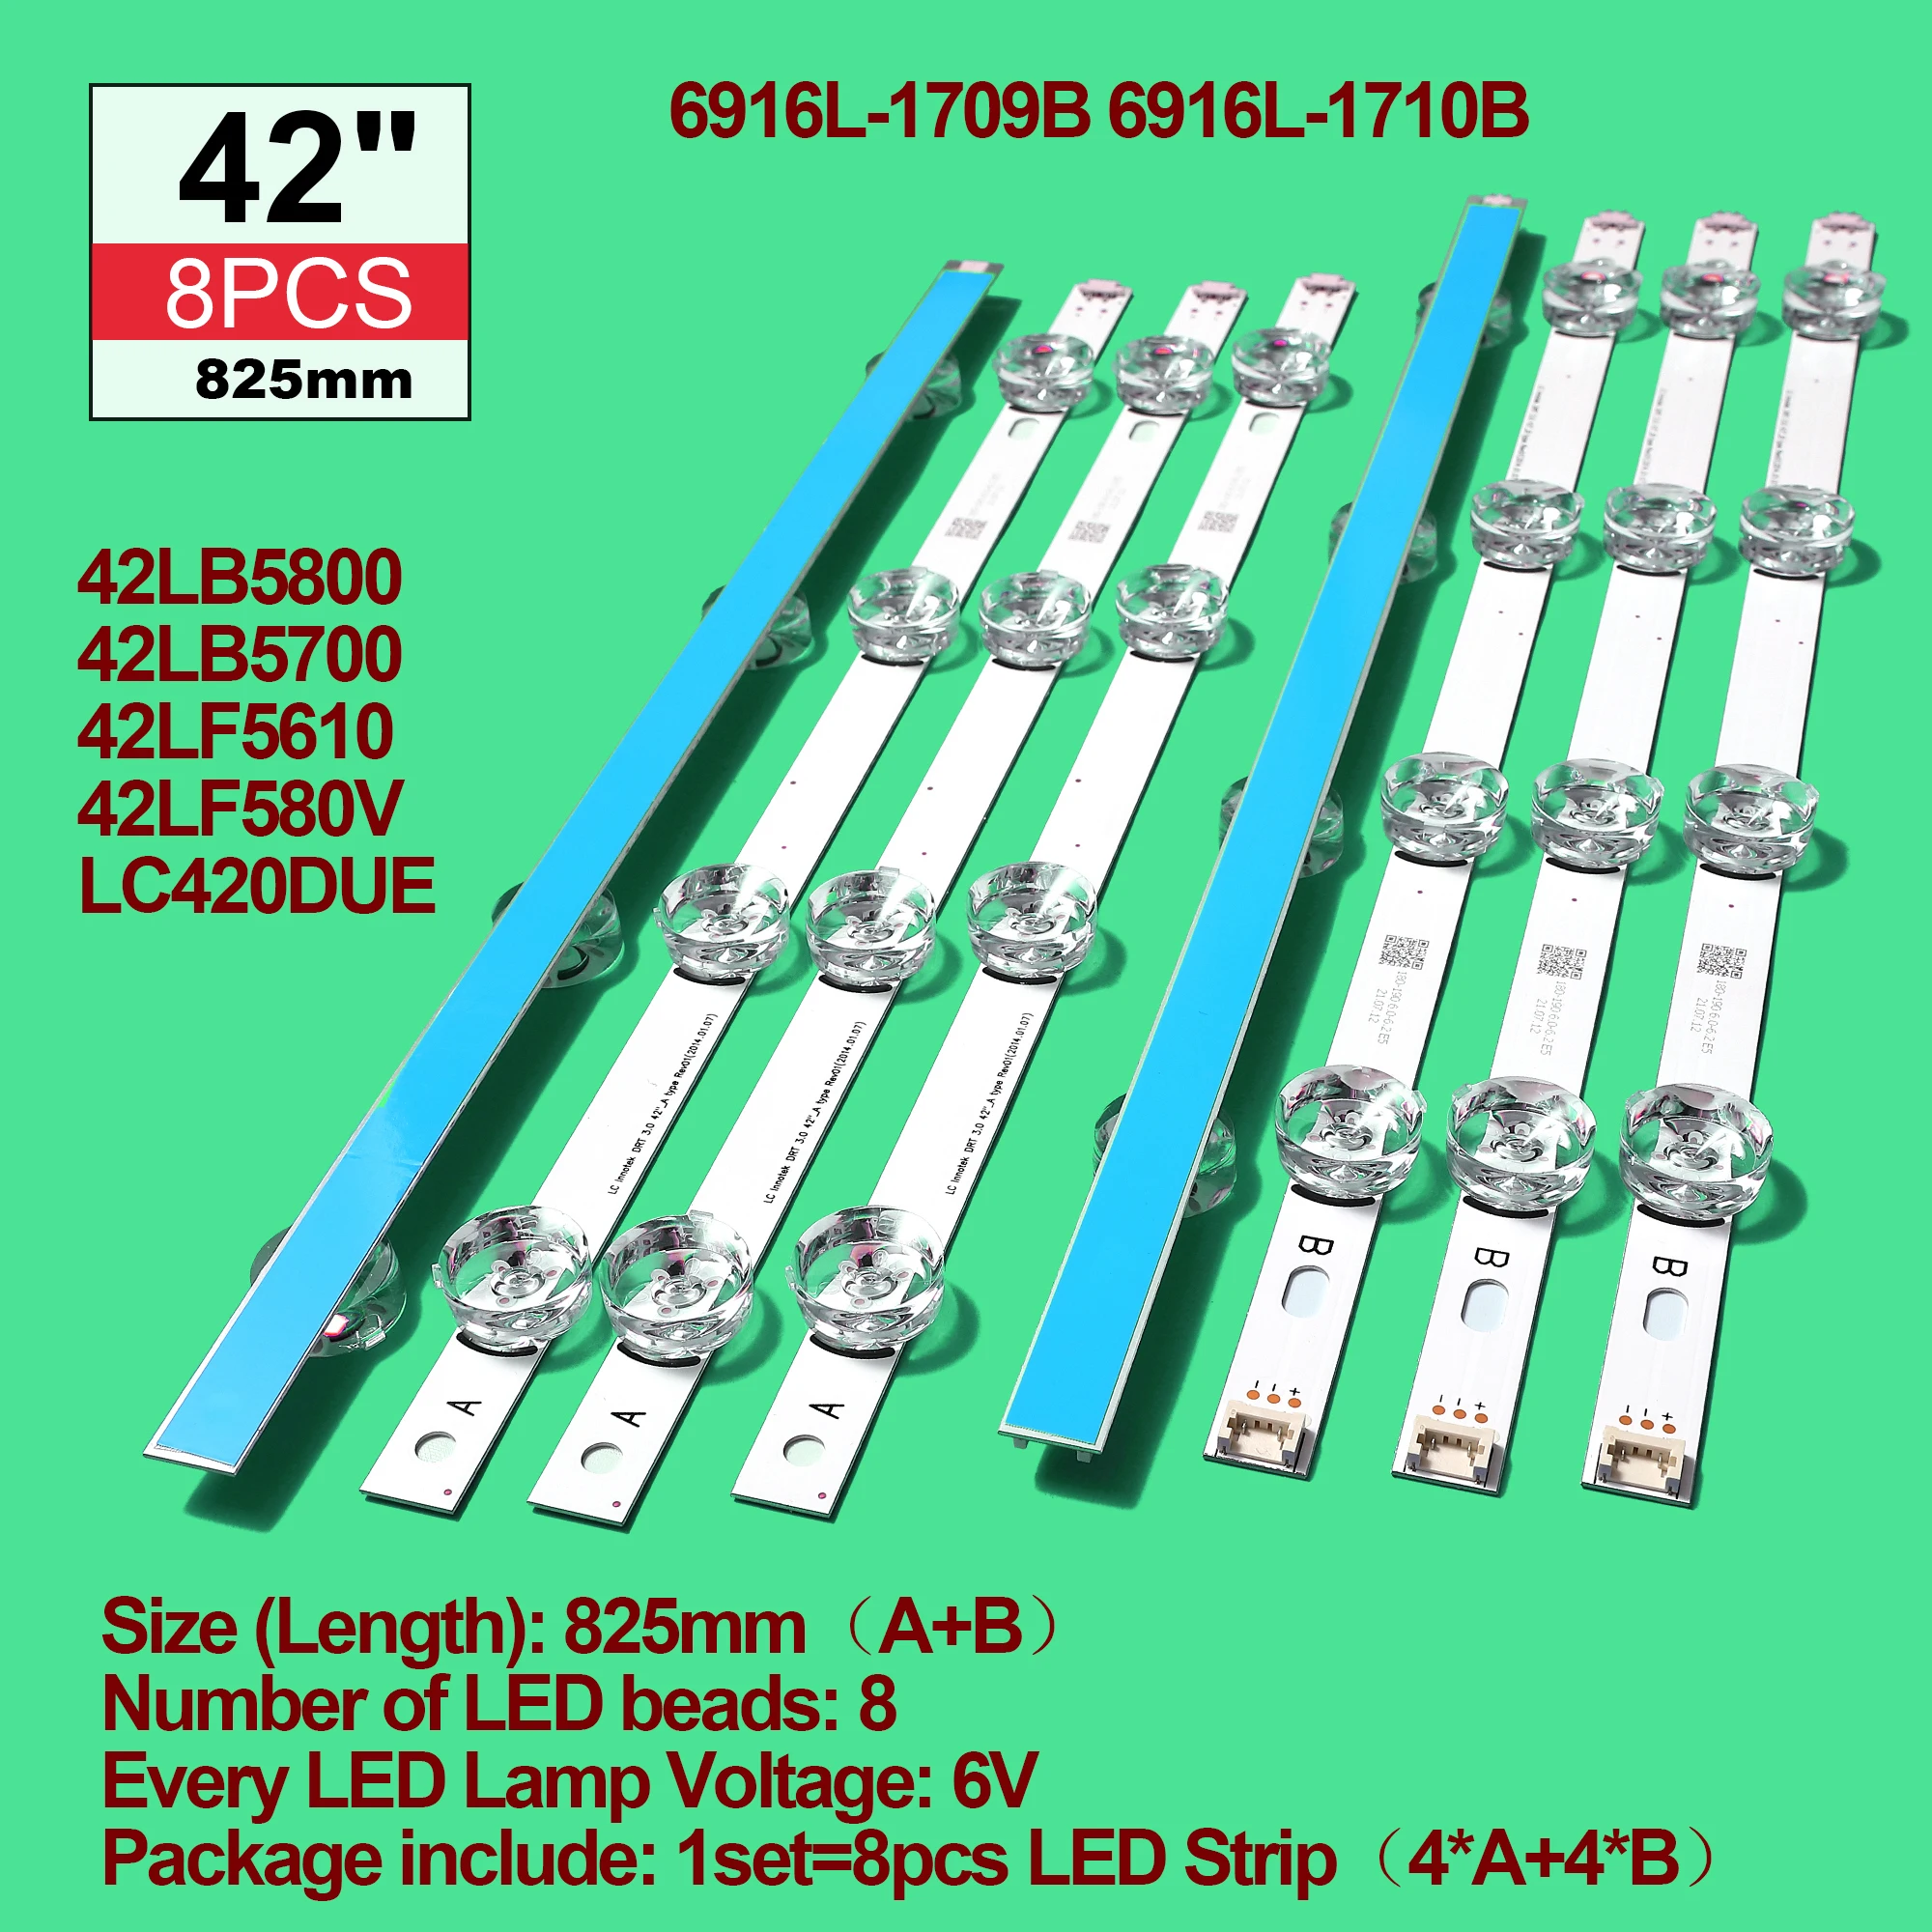 5set=40pieces strip For LIG TV 42LF5610 42LF580V 42LF5800 6916L-1709B 42LB628V 42LB6200 42LY310C INNOTEK DR3.0 42inch 42LB550A